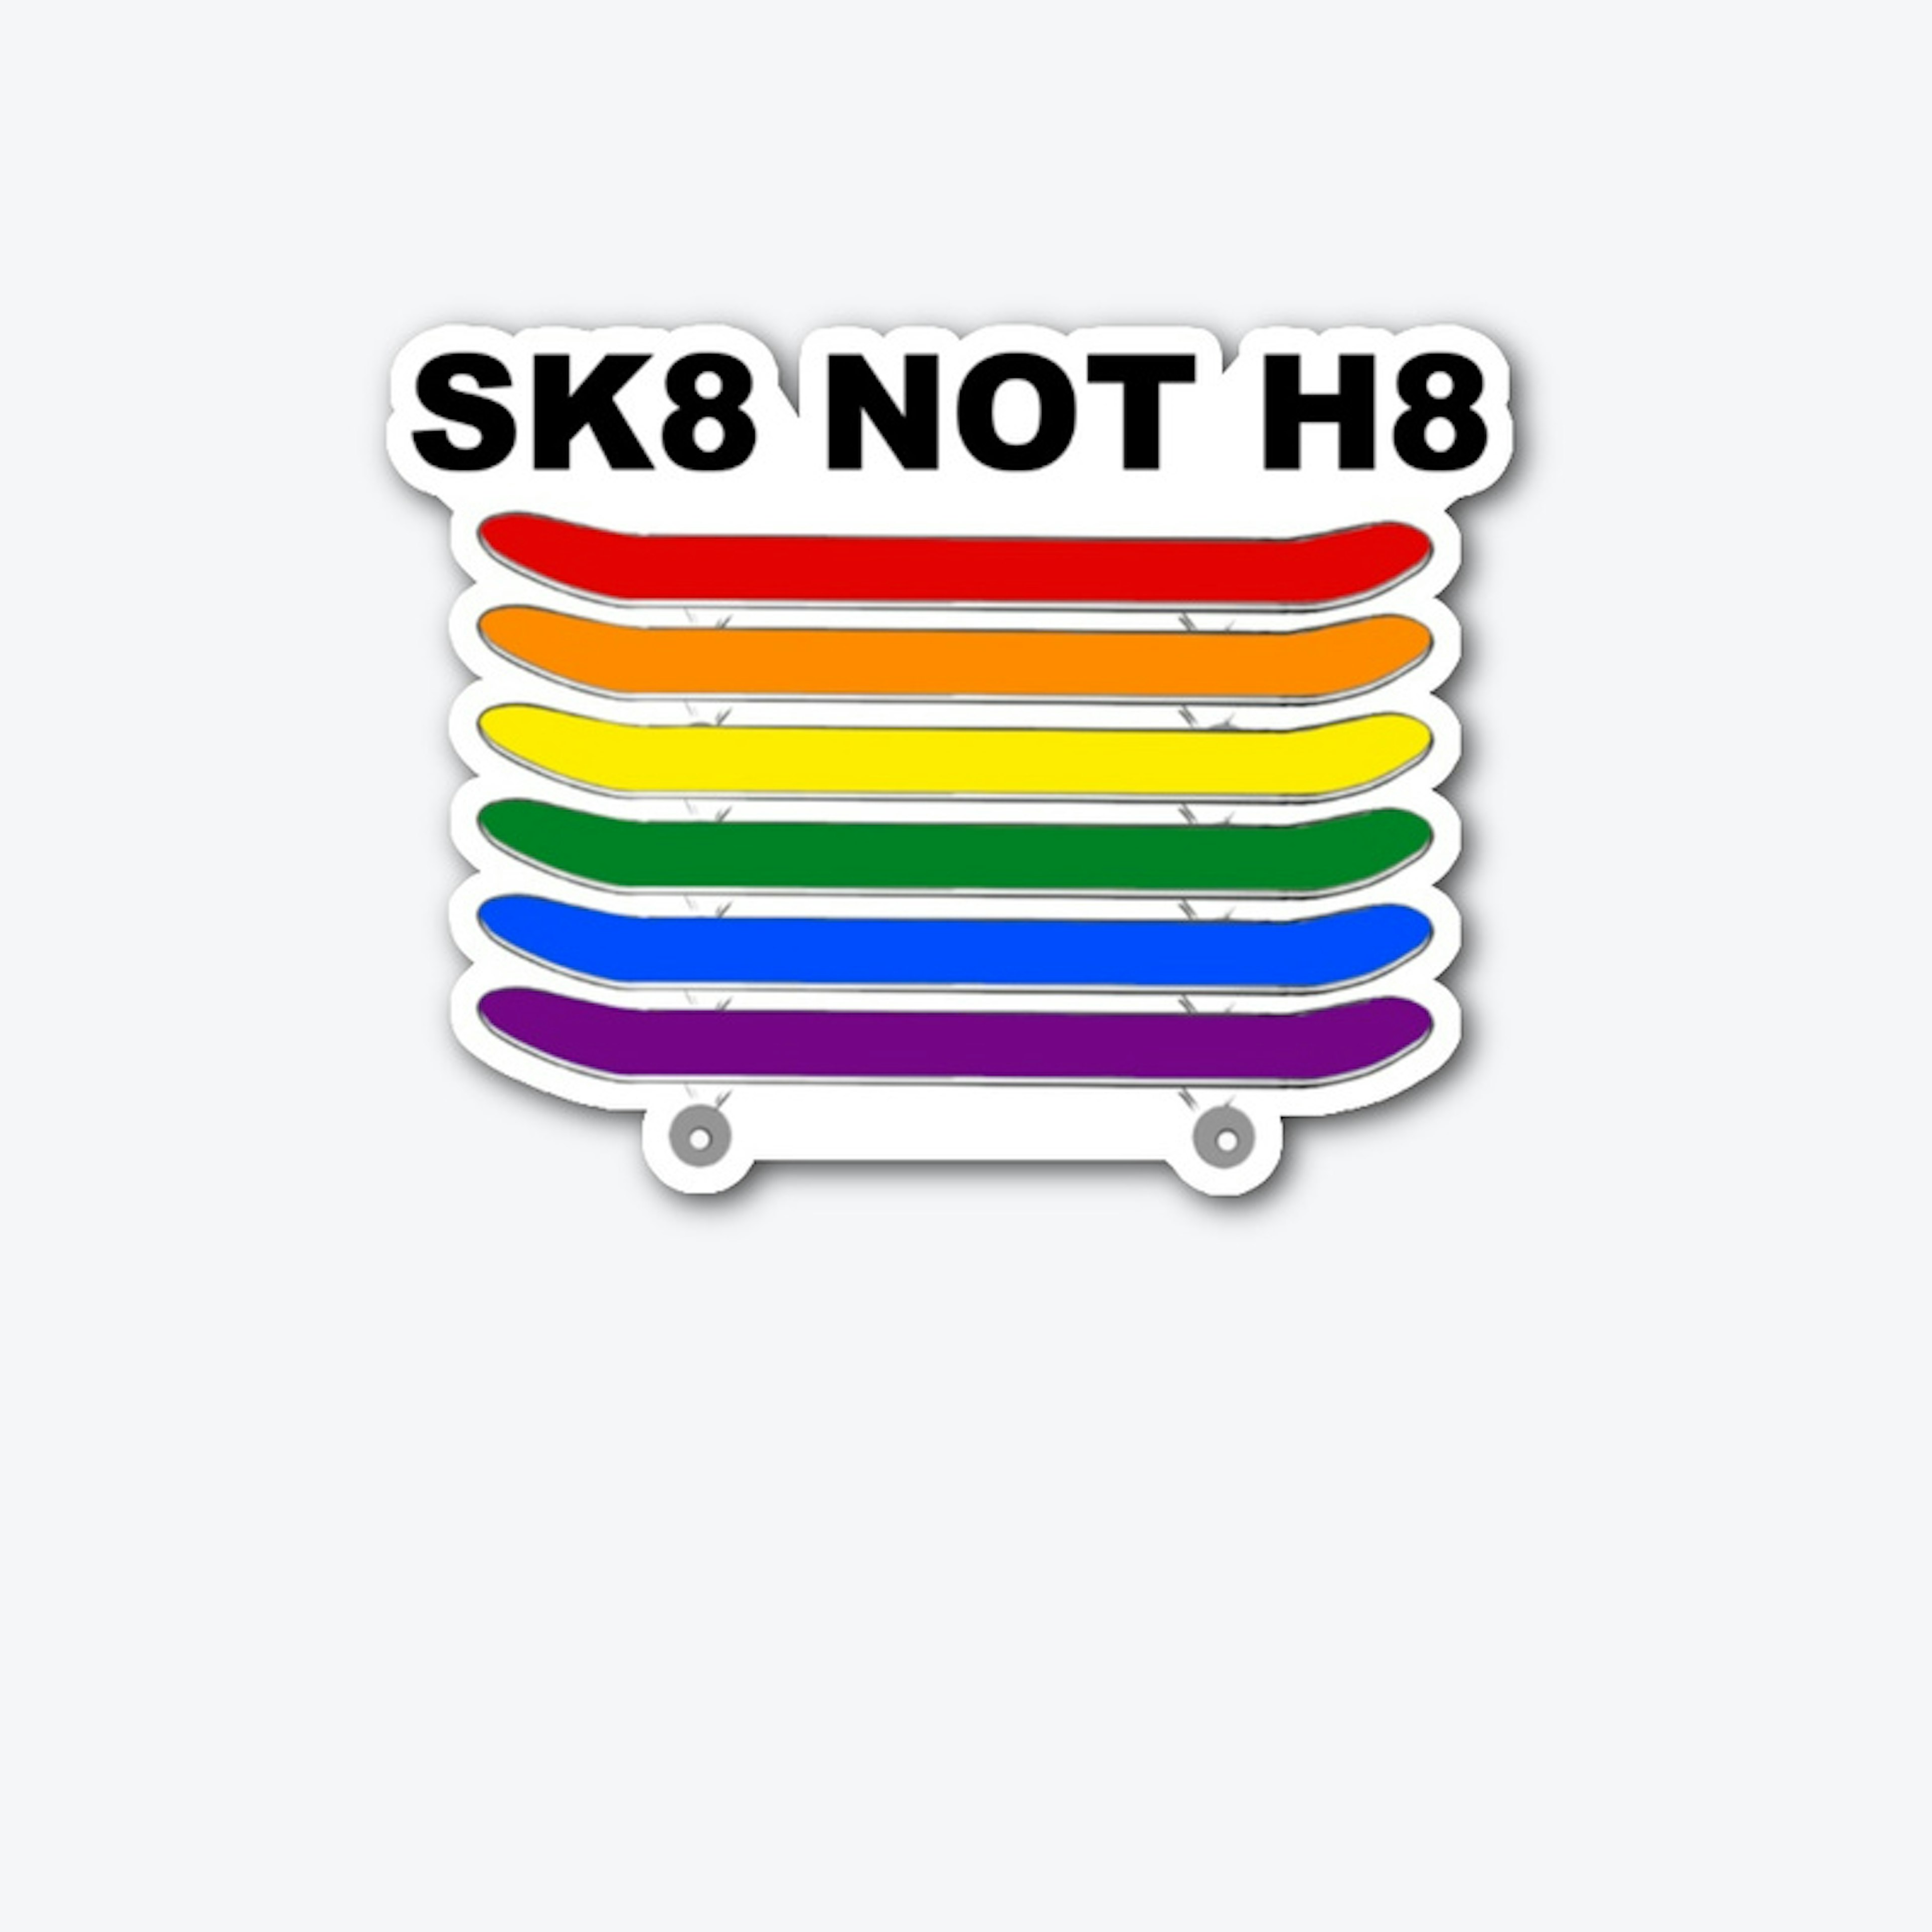 SK8 NOT H8 STICKER - DIECUT